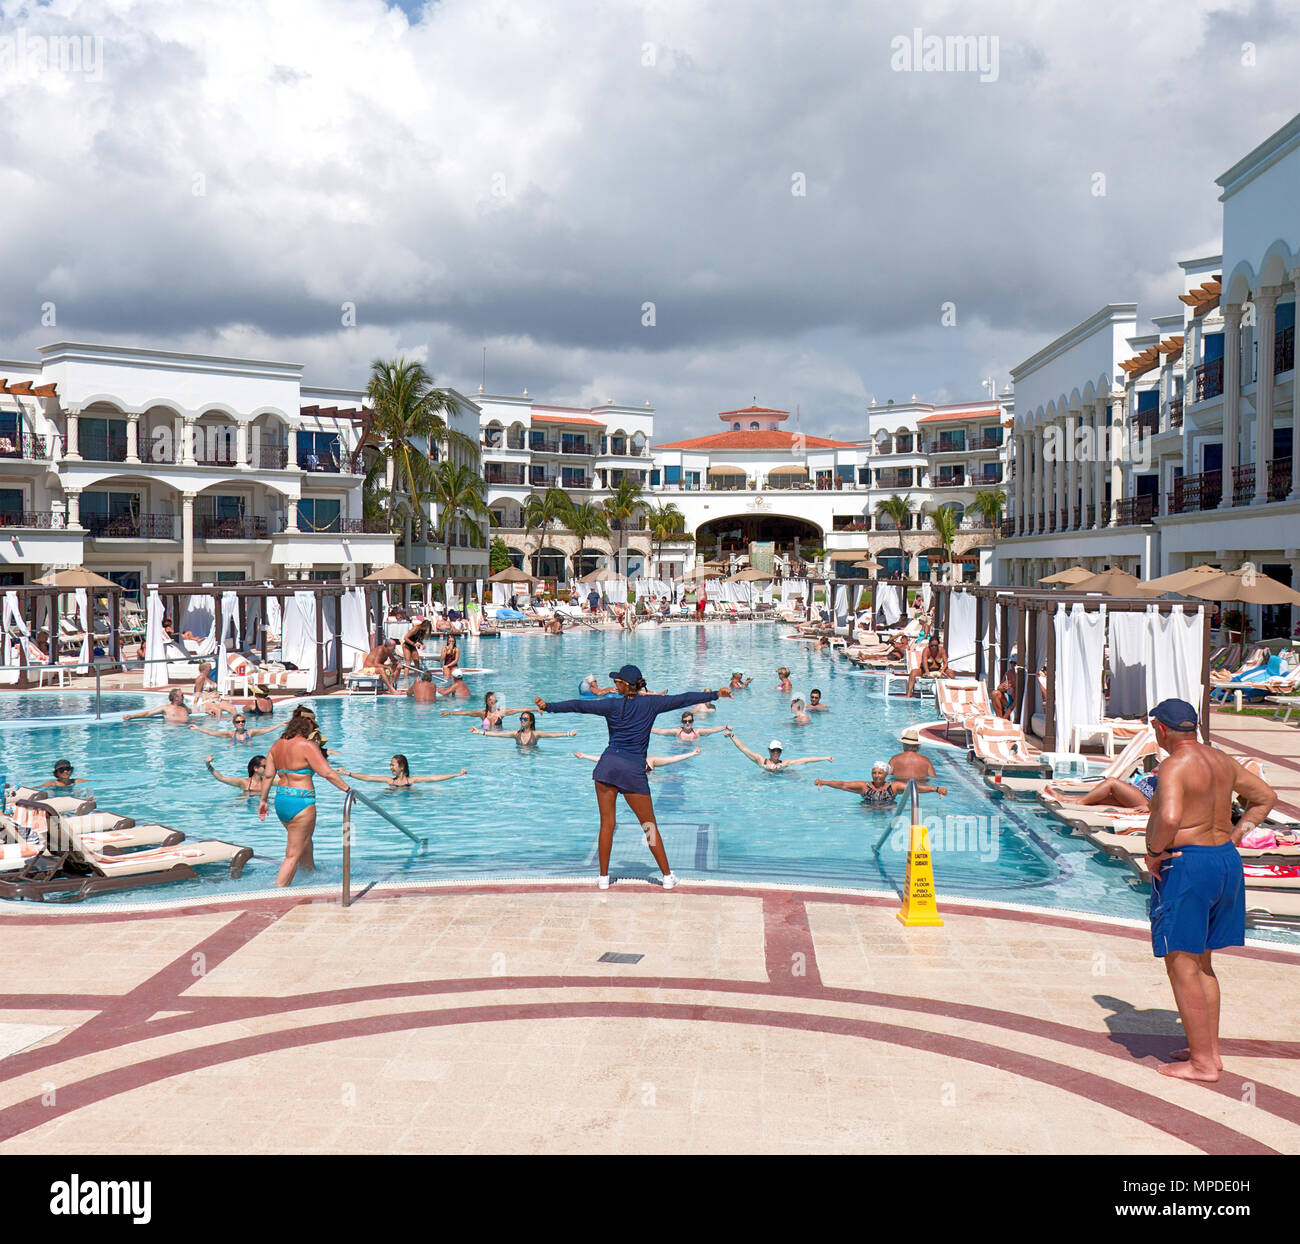 Les exercices en piscine, le Royal Playa Del Carmen resort hotel, Playa del Carmen, Quintana Roo, Mexique Banque D'Images